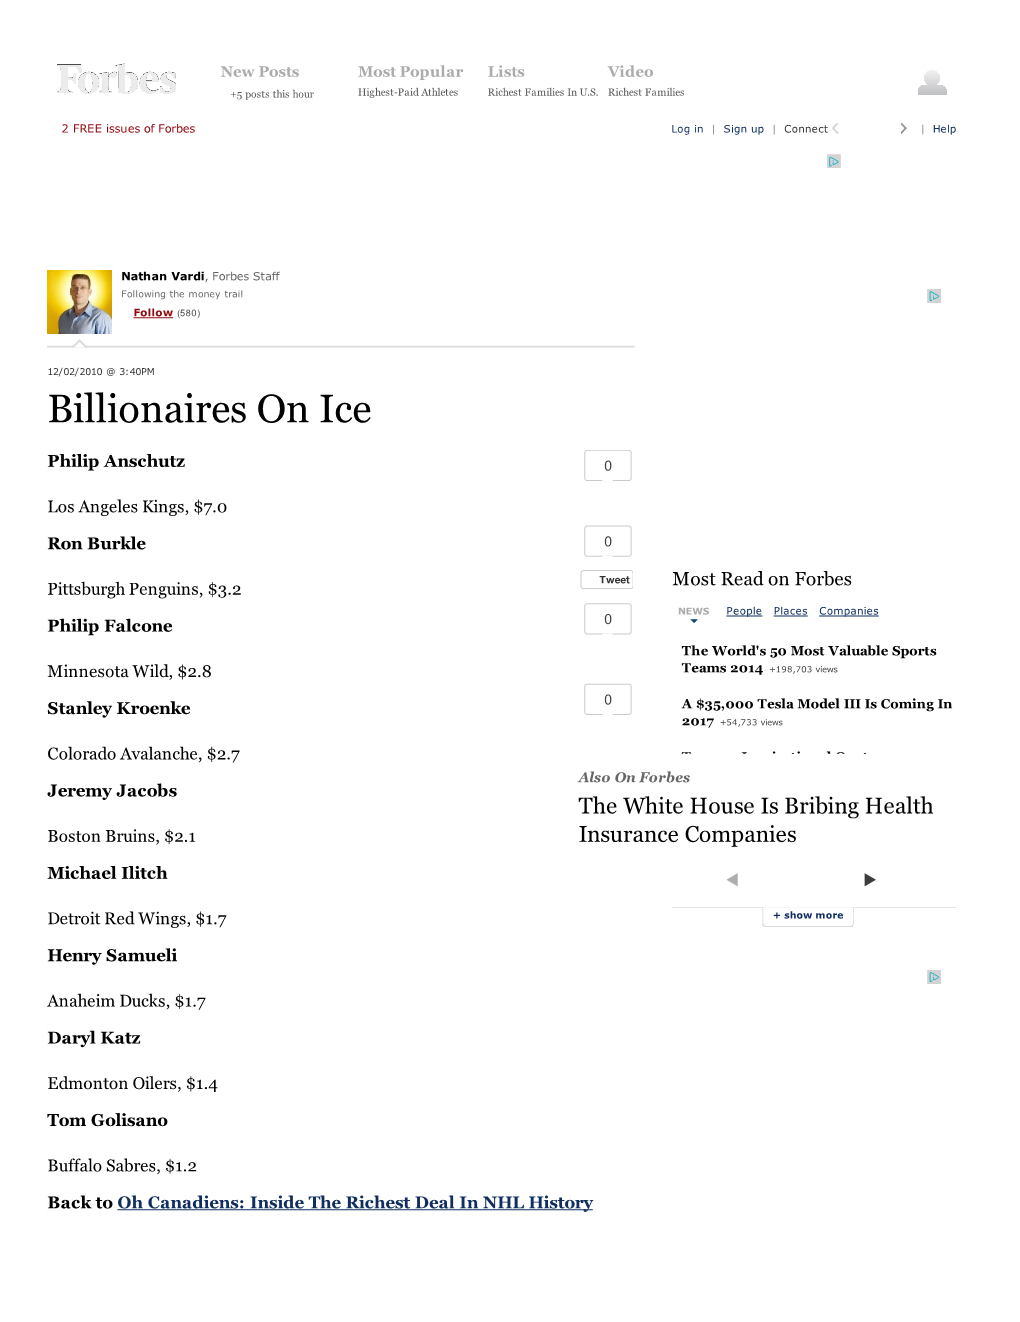 Billionaires on Ice